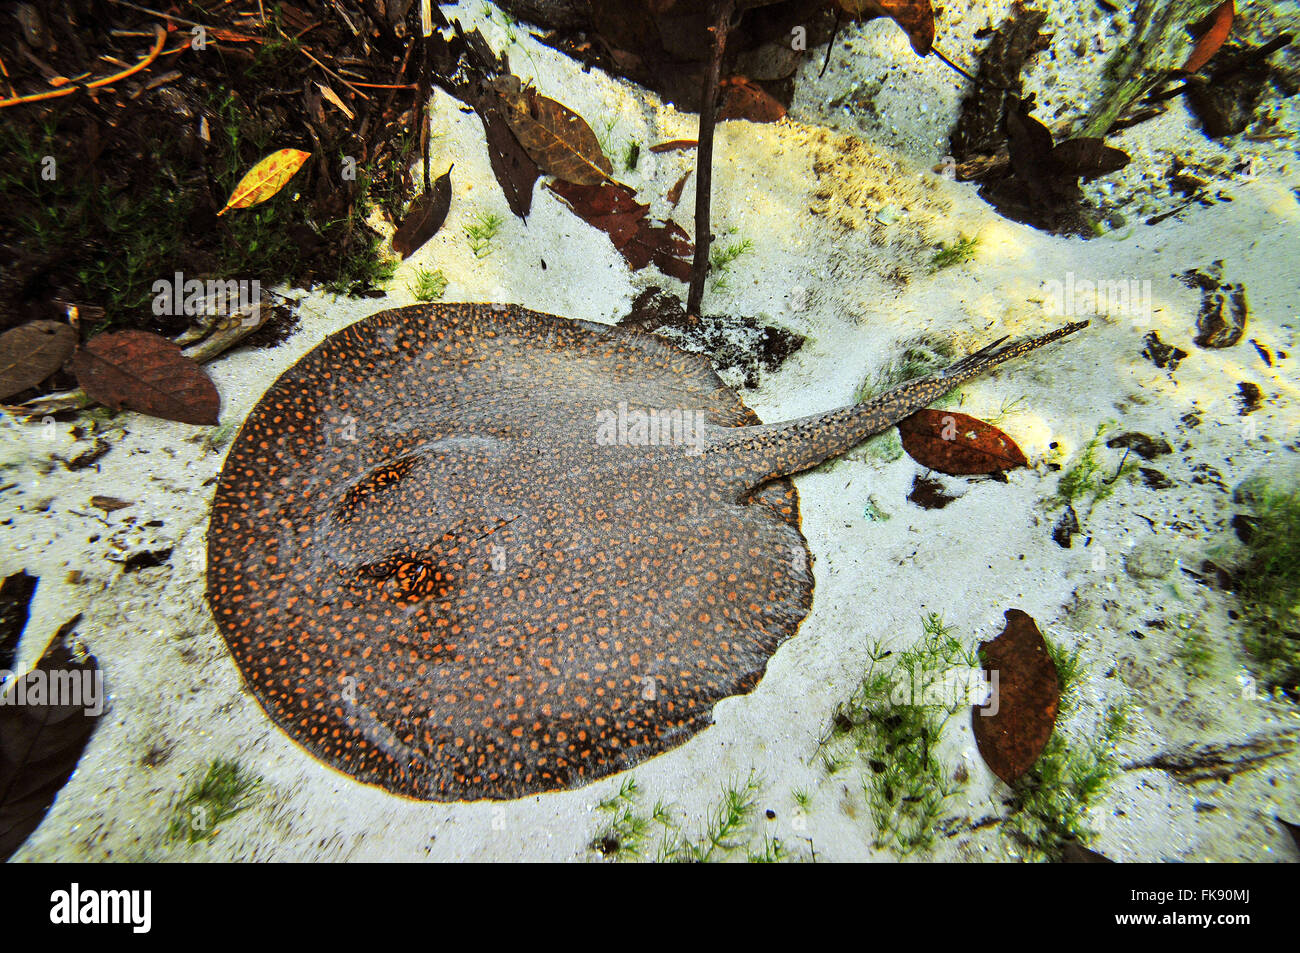 Freshwater Stingray - Potamotrygon motoro Stock Photo